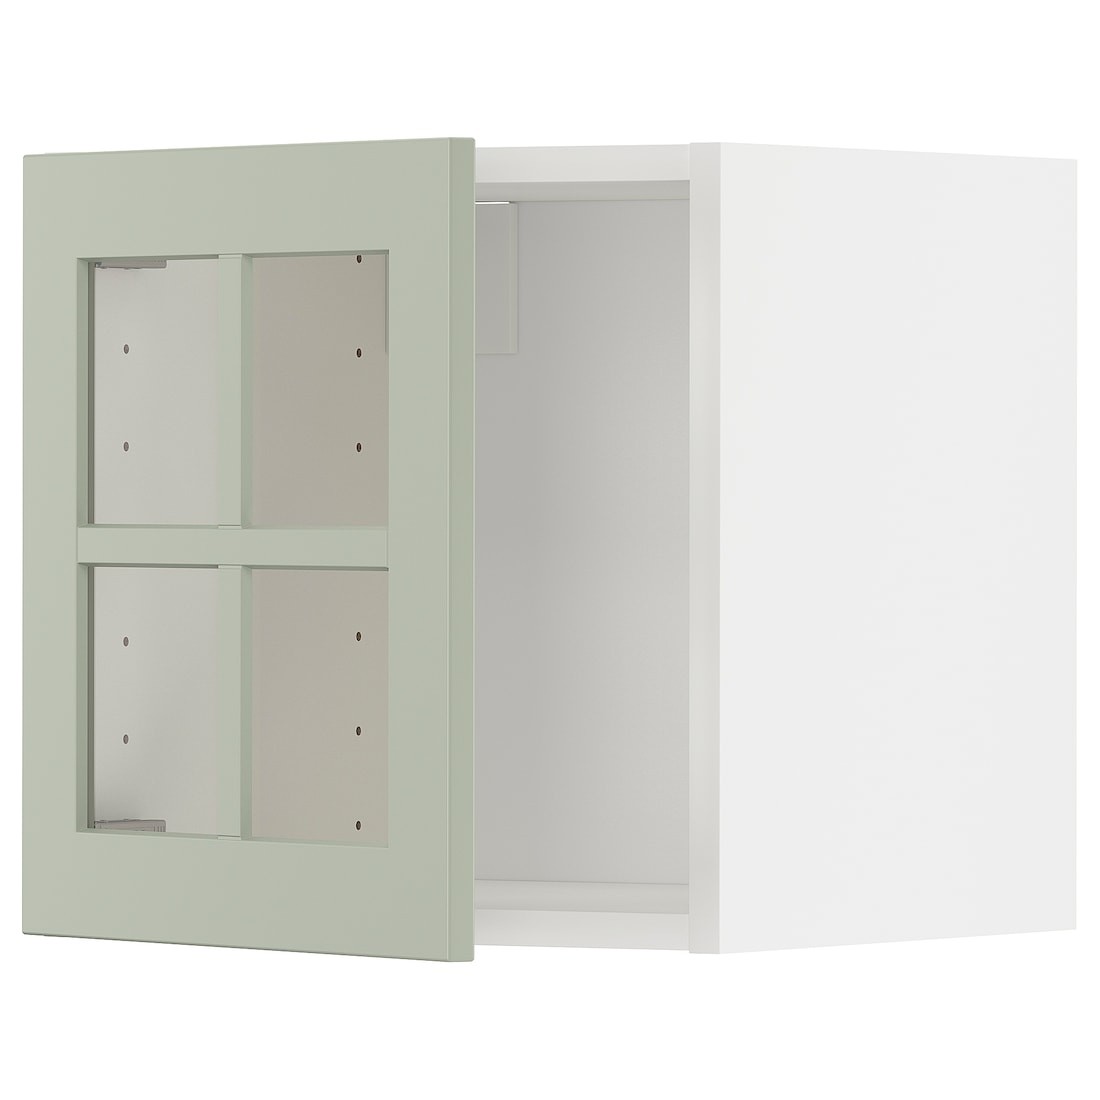 METOD МЕТОД Навесной шкаф со стеклянной дверью, белый / Stensund светло-зеленый, 40x40 см